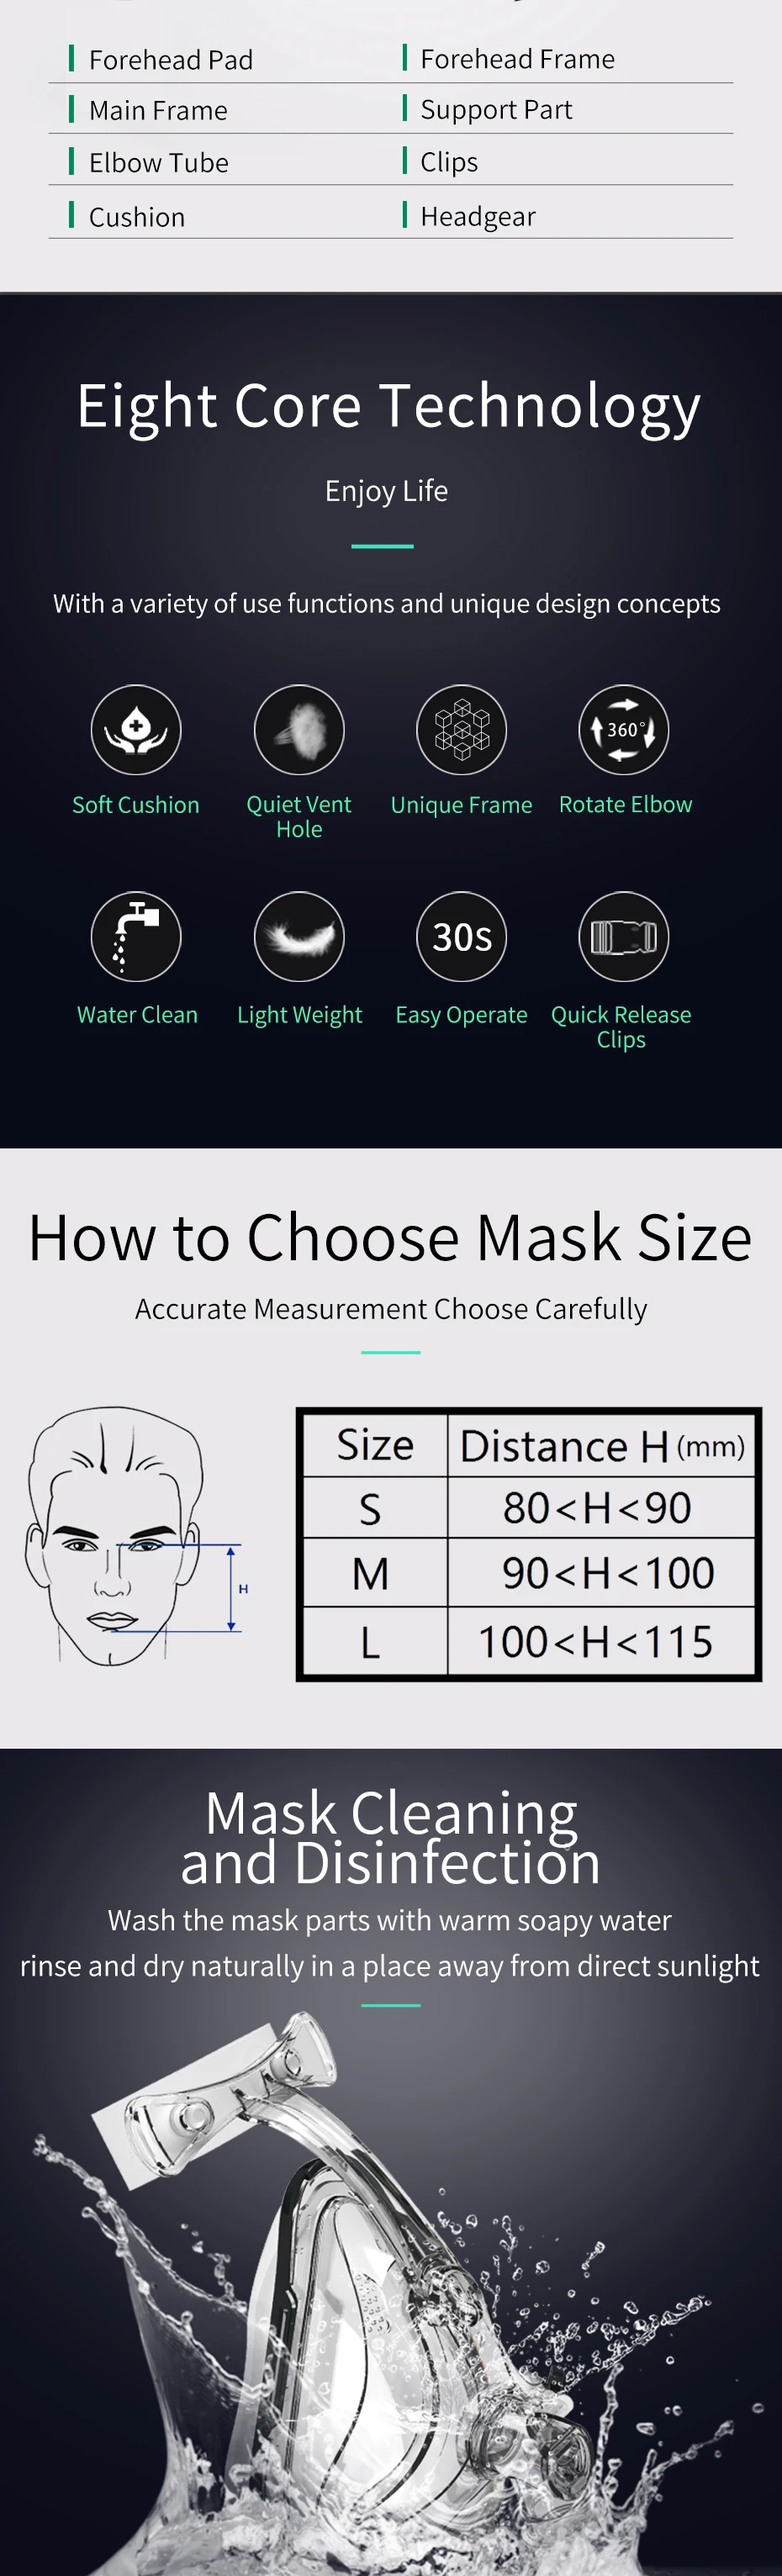 BMC CPAP маска на все лицо для CPAP машины APAP BPAP с регулируемым подбородком головной убор ремень для сна апноэ анти храп решение